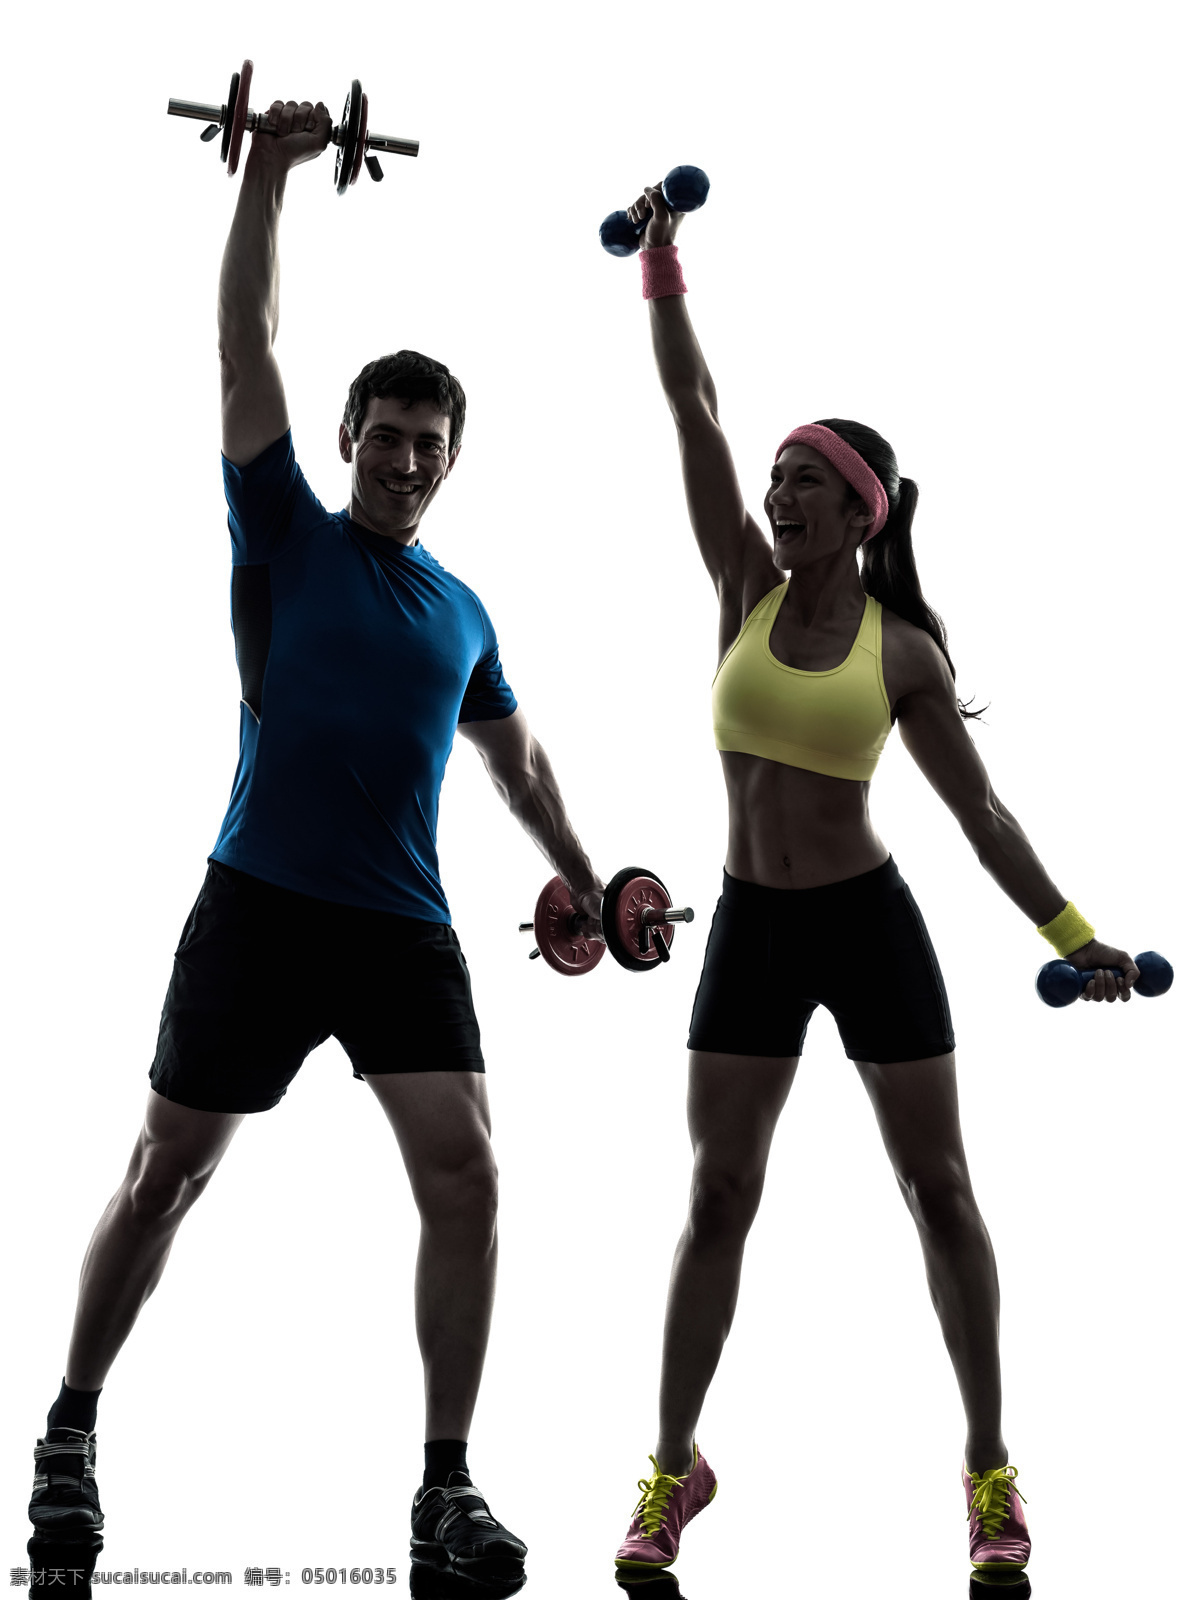 健身 动作 要领 高清 双人健身 男性 举哑铃 健身动作 姿势 锻炼健身 瘦身减肥 瘦身美女 性感美女 健身美女 运动人物 人物 人物图片 白色